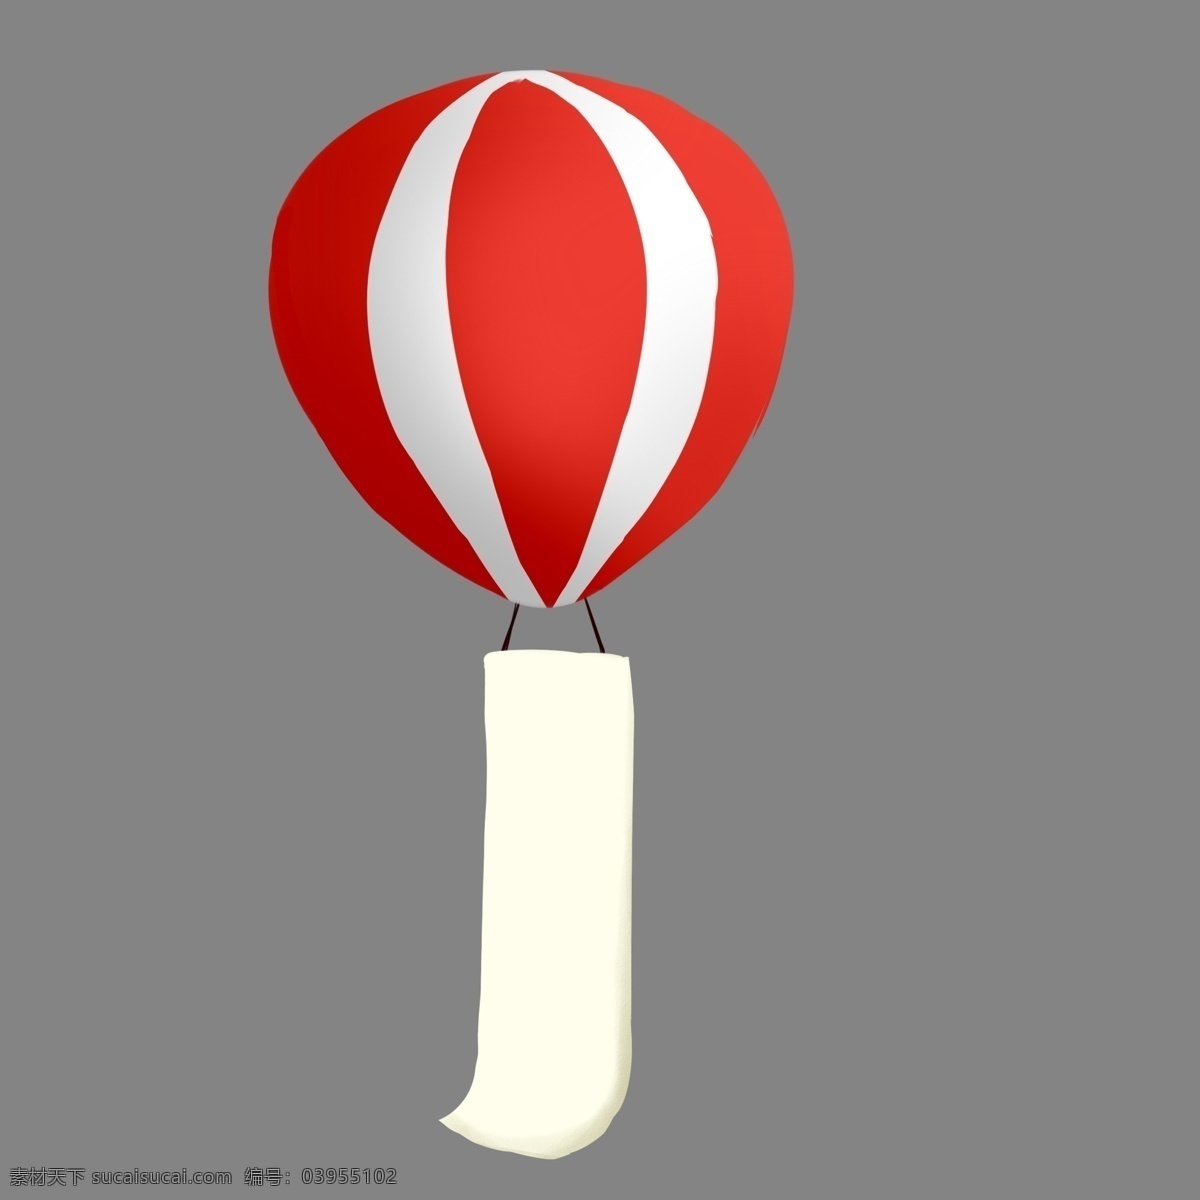 插 画风 氢气球 广告 横幅 插画 手绘 卡通 红色 可爱 清新 简约 促销 气球 气球广告